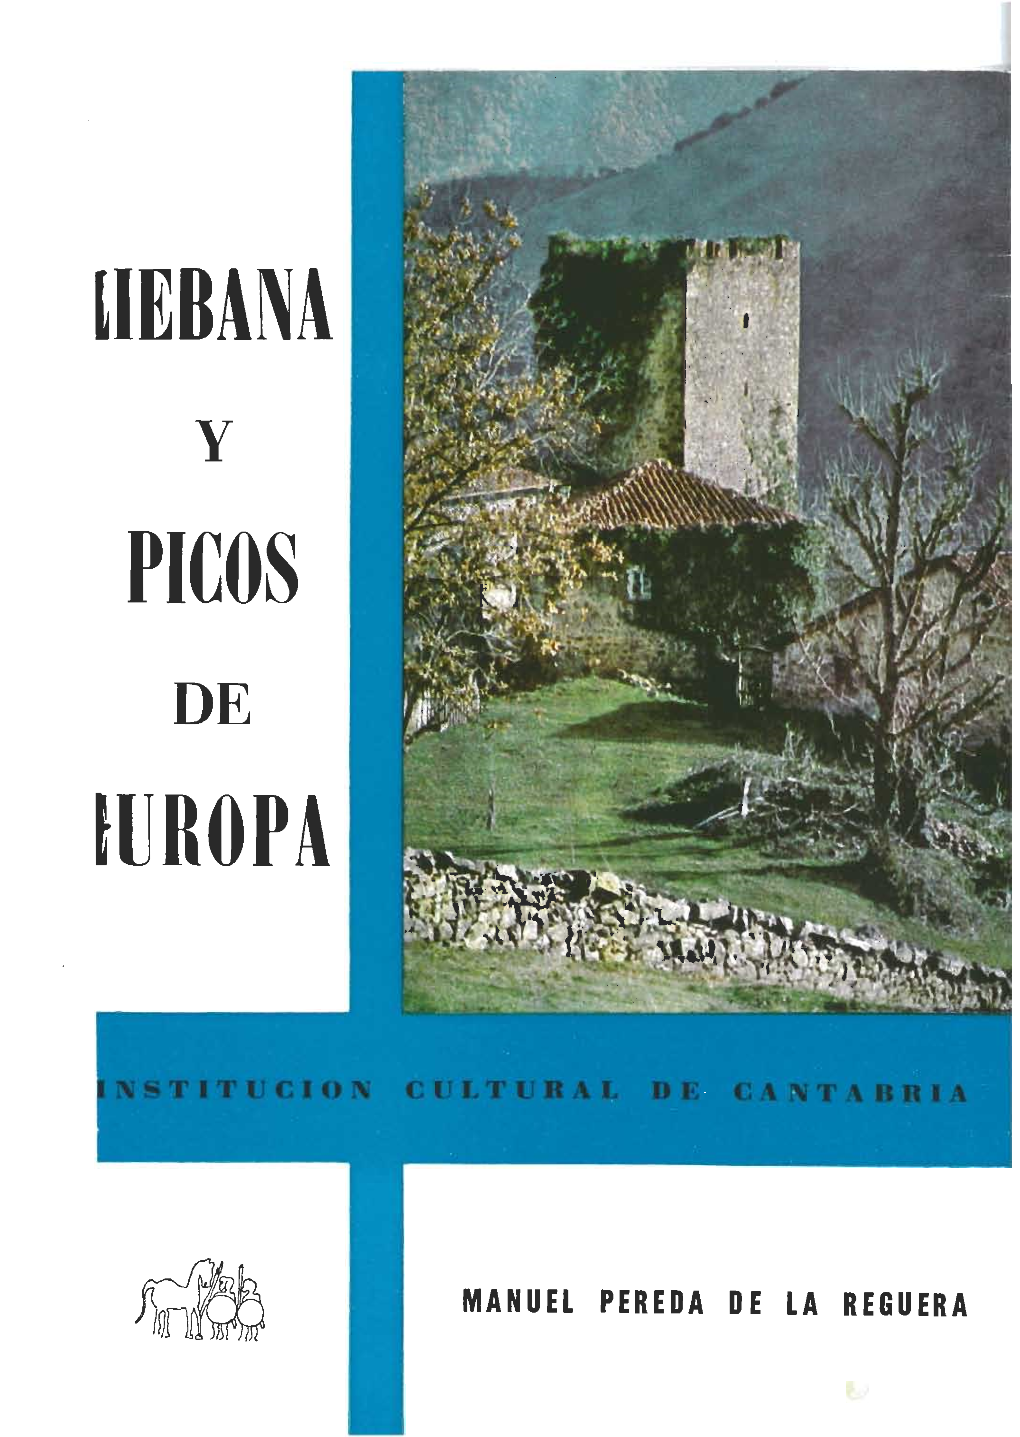 51. Liébana and Picos De Europa